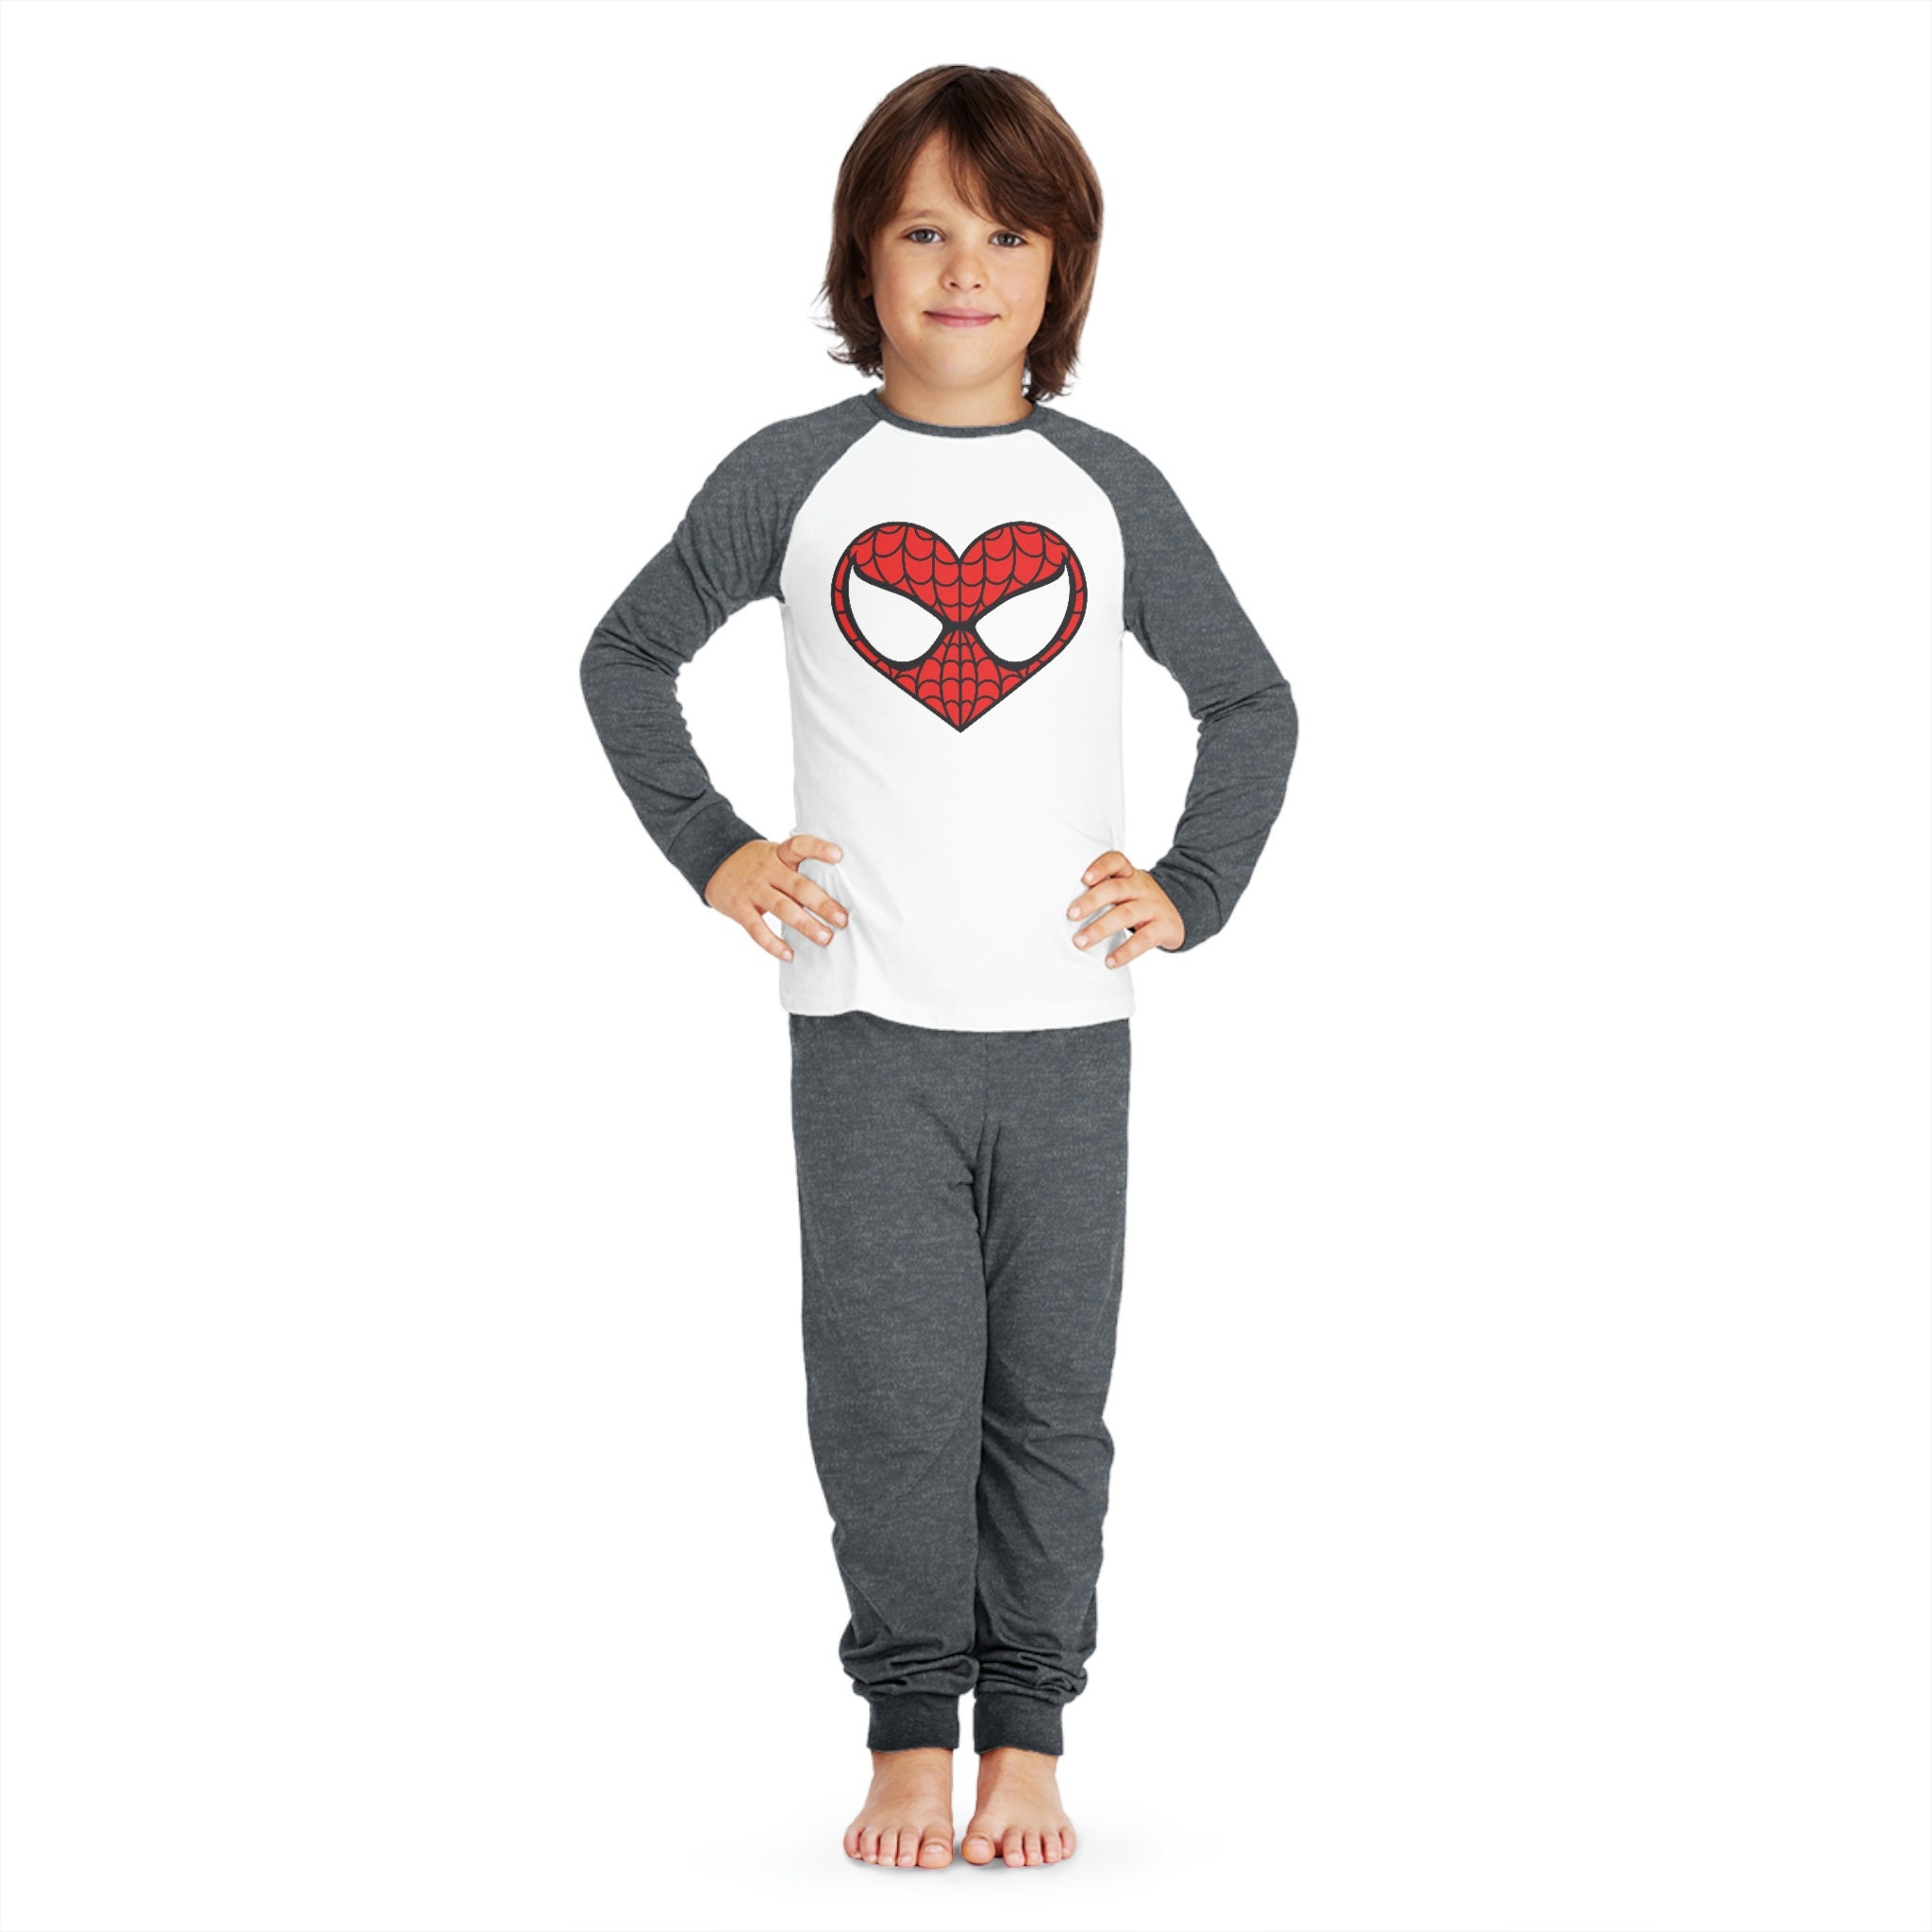 Pijama Spiderman Buzo + Pantalón - Preescolar, PIJAMAS